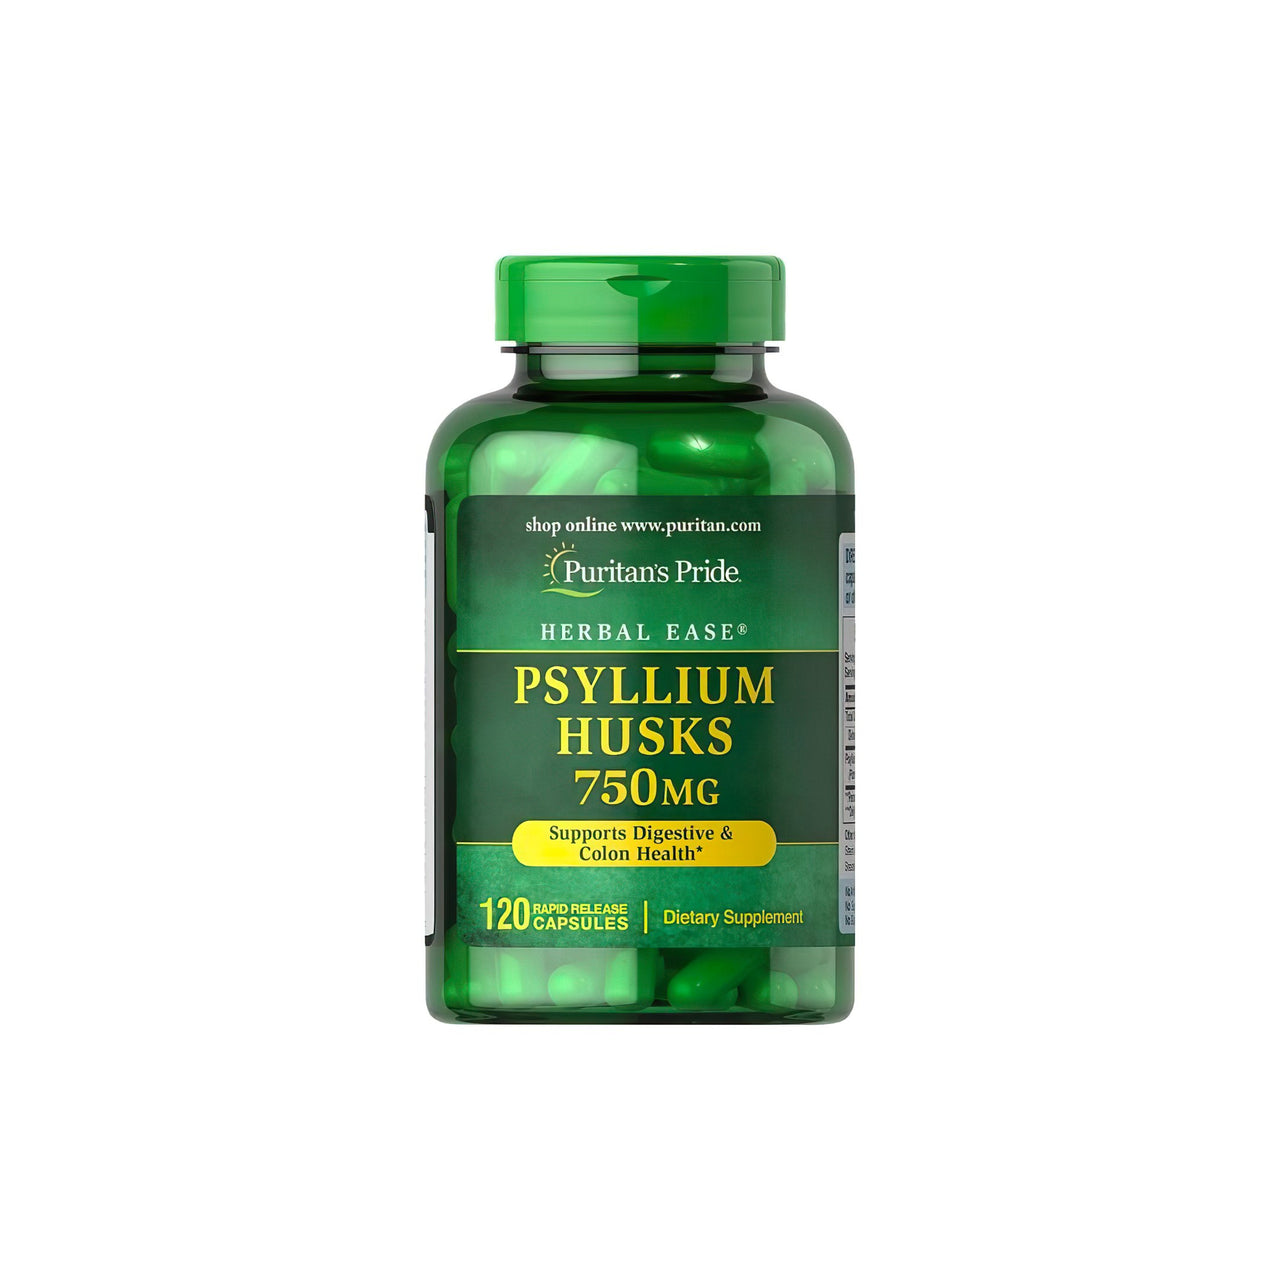 Un disintossicante naturale per l'apparato digerente, questo flacone di Puritan's Pride Psyllium Husks 750 mg 120 Capsule a Rilascio Rapido contiene bucce di psillio di prima qualità.